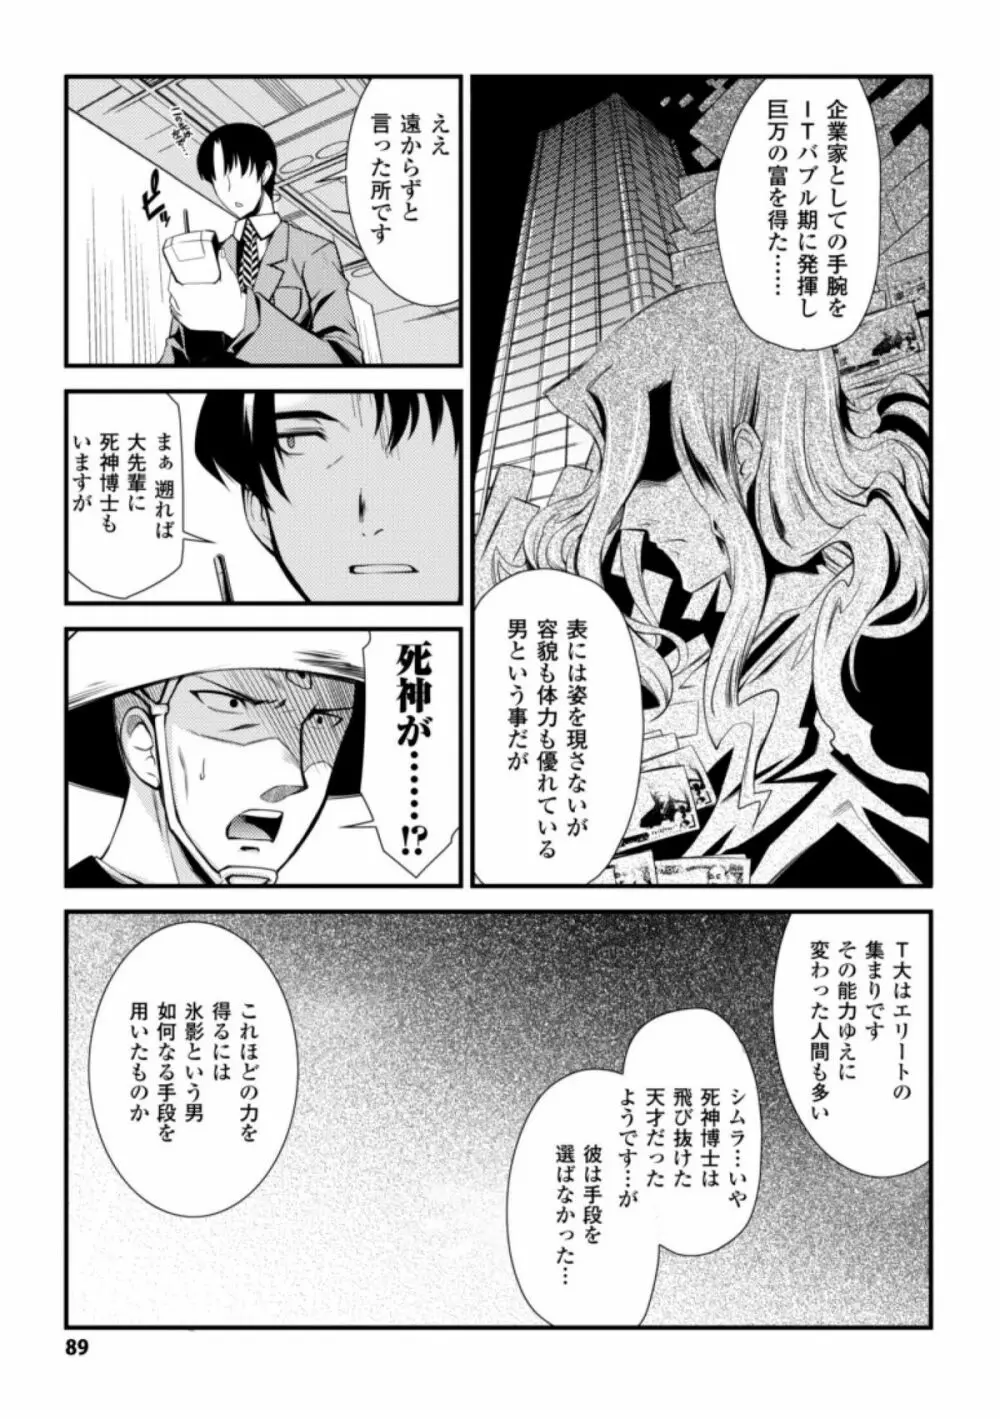 ドリームハンター麗夢XX -蒼の機関騎士- 89ページ